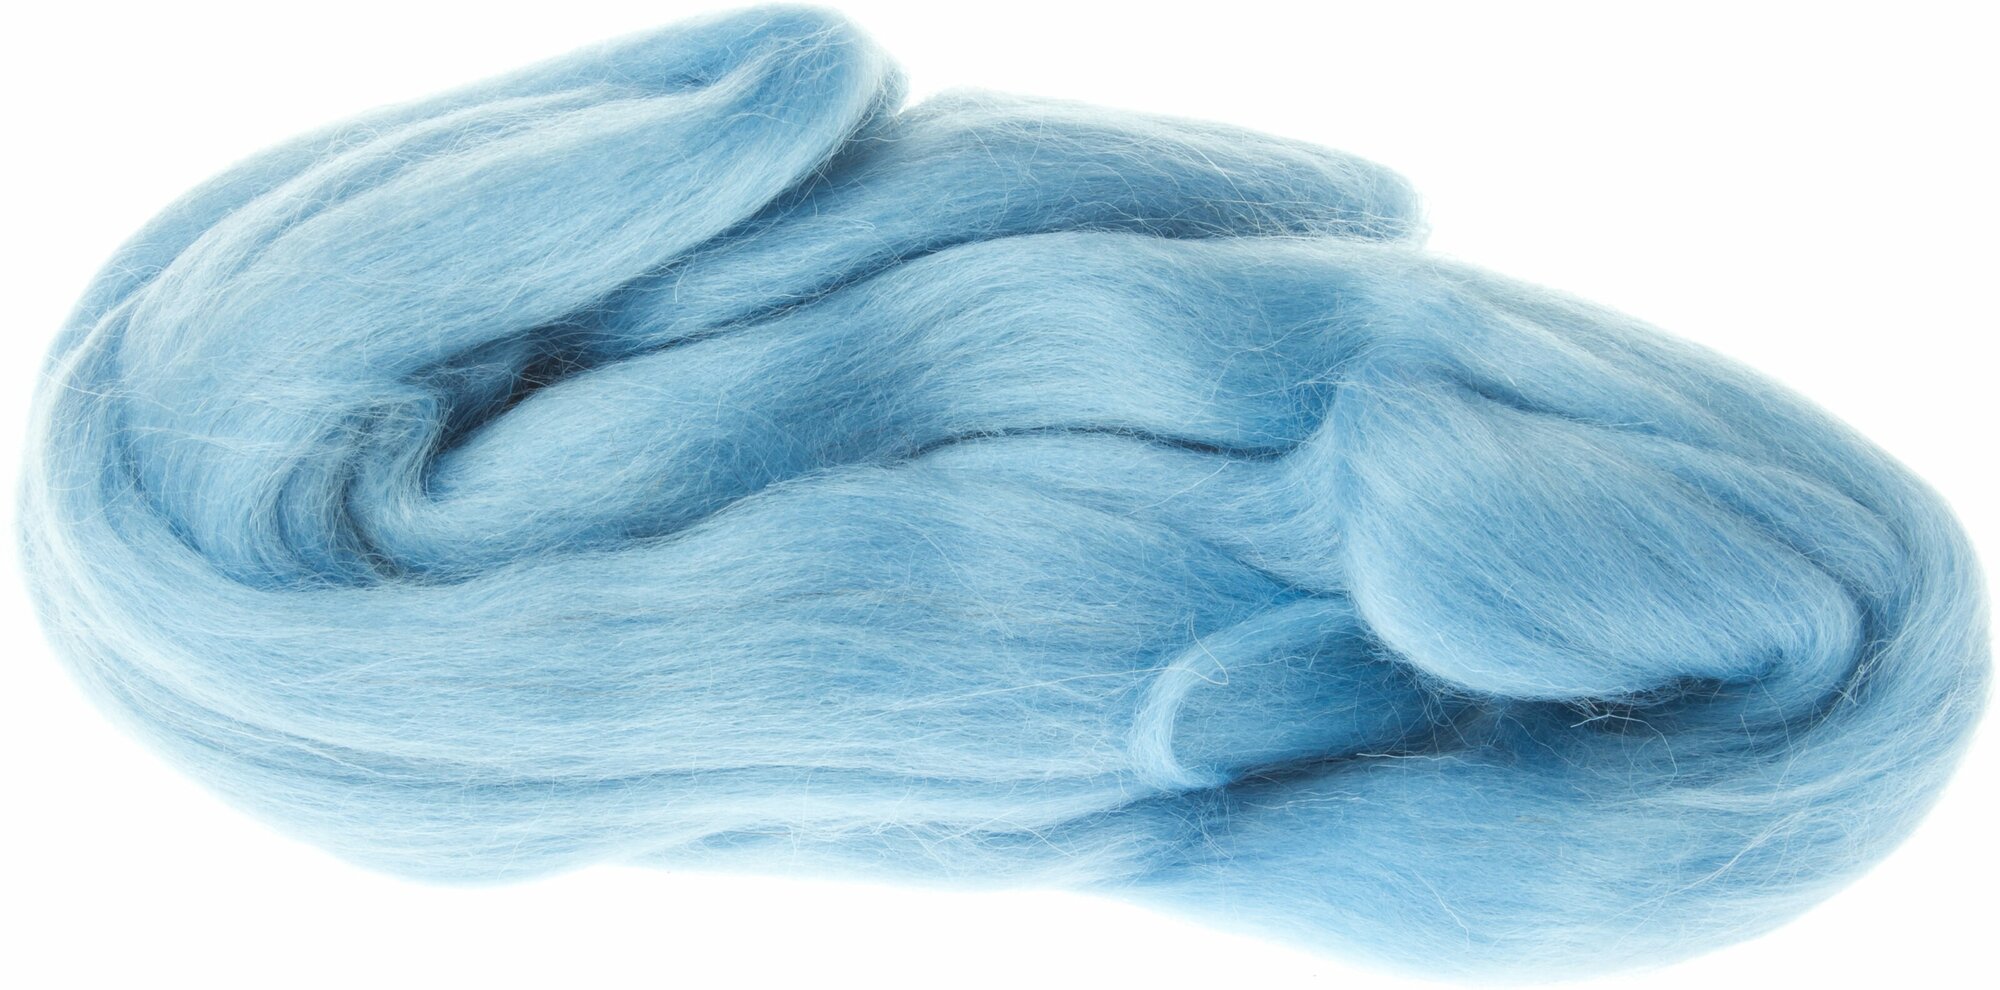 Шерсть для валяния камтекс полутонкая голубой (015), 100%шерсть, 50г, 2шт